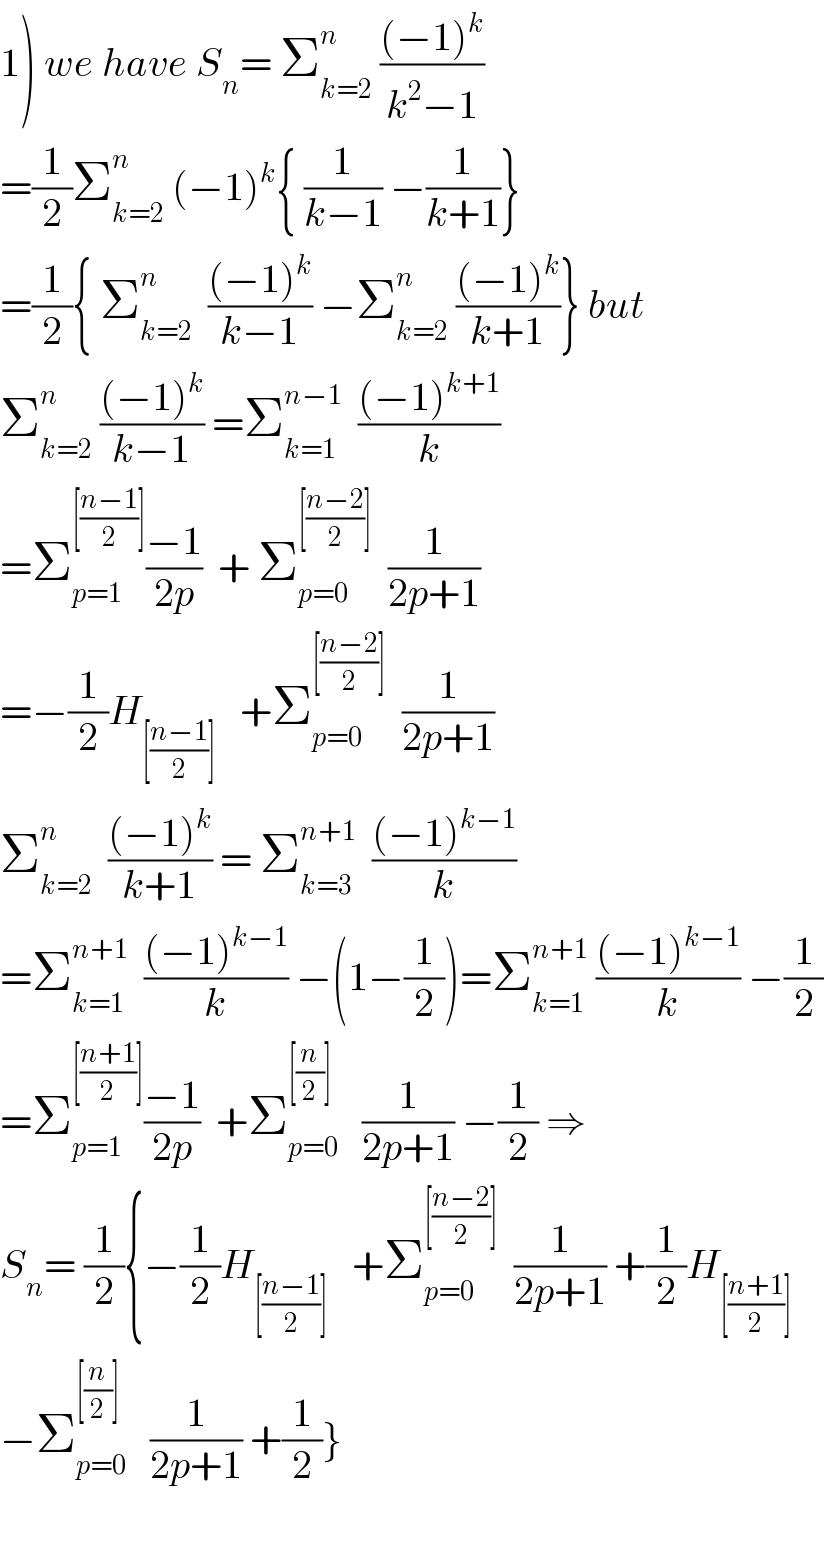 1) we have S_n = Σ_(k=2) ^n  (((−1)^k )/(k^2 −1))  =(1/2)Σ_(k=2) ^n  (−1)^k { (1/(k−1)) −(1/(k+1))}  =(1/2){ Σ_(k=2) ^n   (((−1)^k )/(k−1)) −Σ_(k=2) ^n  (((−1)^k )/(k+1))} but  Σ_(k=2) ^n  (((−1)^k )/(k−1)) =Σ_(k=1) ^(n−1)   (((−1)^(k+1) )/k)  =Σ_(p=1) ^([((n−1)/2)]) ((−1)/(2p))  + Σ_(p=0) ^([((n−2)/2)])   (1/(2p+1))  =−(1/2)H_([((n−1)/2)])    +Σ_(p=0) ^([((n−2)/2)])   (1/(2p+1))  Σ_(k=2) ^n   (((−1)^k )/(k+1)) = Σ_(k=3) ^(n+1)   (((−1)^(k−1) )/k)  =Σ_(k=1) ^(n+1)   (((−1)^(k−1) )/k) −(1−(1/2))=Σ_(k=1) ^(n+1)  (((−1)^(k−1) )/k) −(1/2)  =Σ_(p=1) ^([((n+1)/2)]) ((−1)/(2p))  +Σ_(p=0) ^([(n/2)])    (1/(2p+1)) −(1/2) ⇒  S_n = (1/2){−(1/2)H_([((n−1)/2)])    +Σ_(p=0) ^([((n−2)/2)])   (1/(2p+1)) +(1/2)H_([((n+1)/2)])   −Σ_(p=0) ^([(n/2)])    (1/(2p+1)) +(1/2)}    